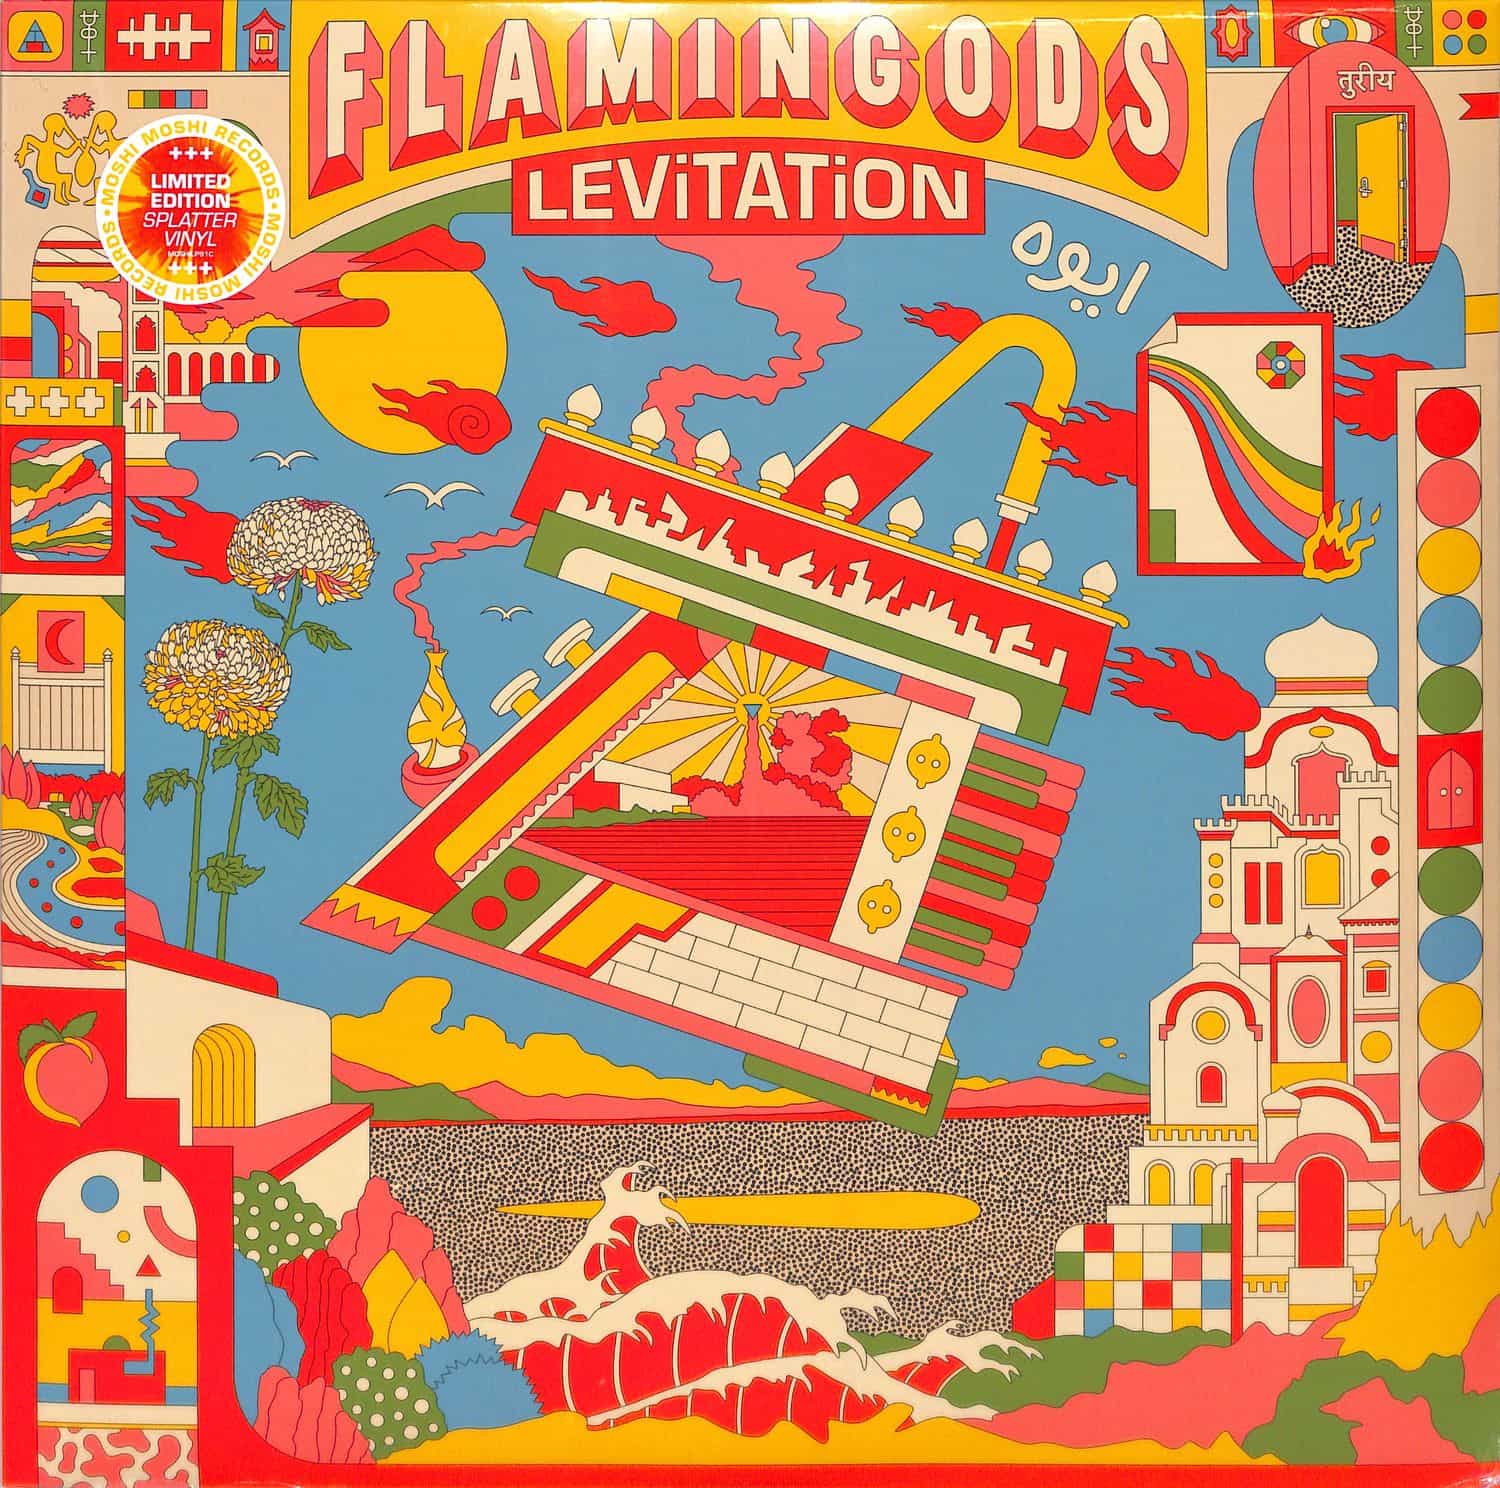 Flamingods - LEVITATION 